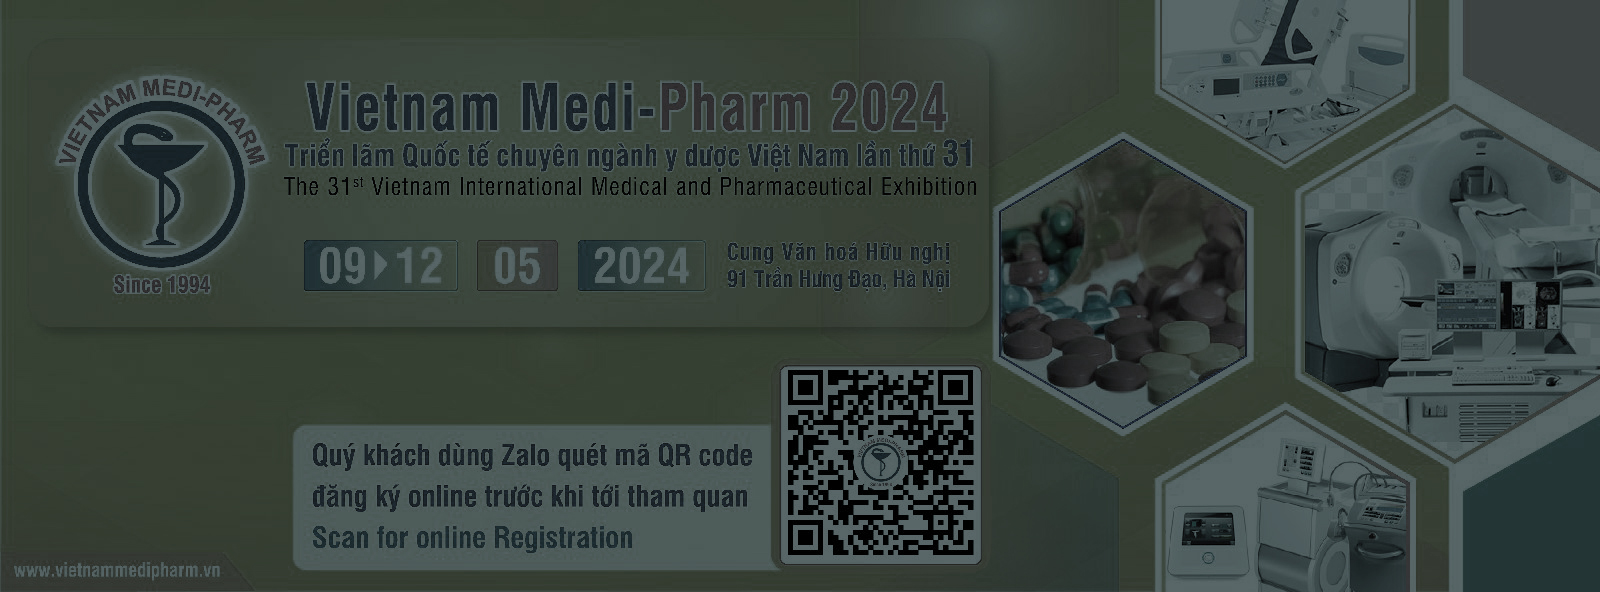 سی و یکمین دوره نمایشگاه تجهیزات پزشکی و صنایع دارویی ویتنام